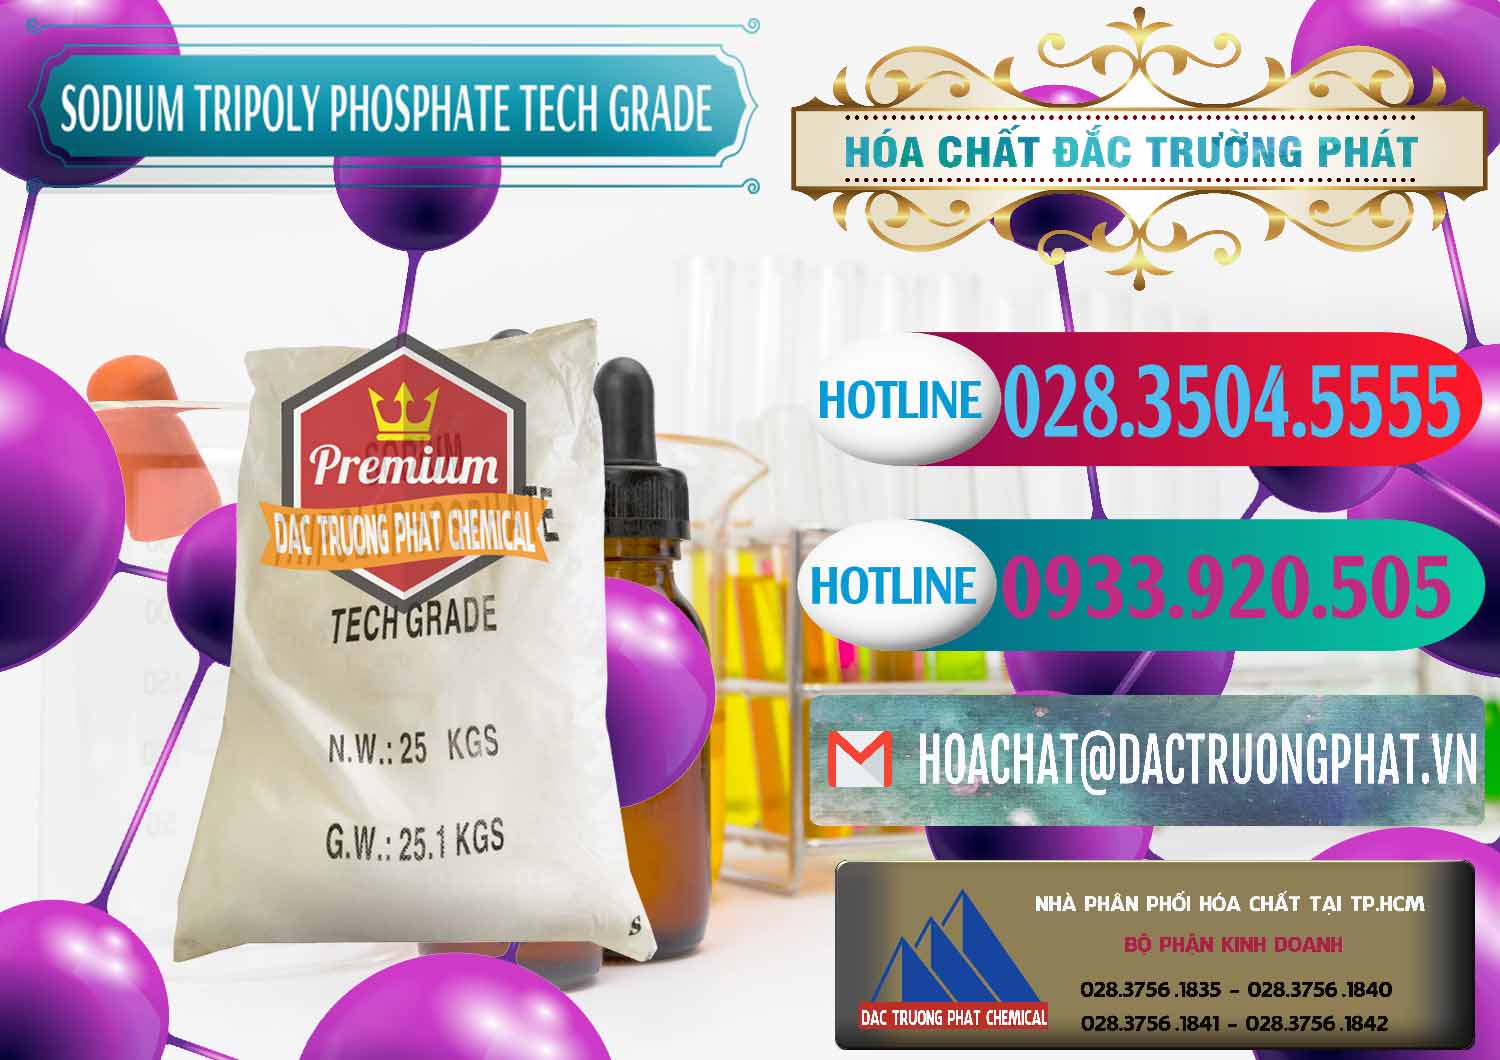 Đơn vị bán - phân phối Sodium Tripoly Phosphate - STPP Tech Grade Trung Quốc China - 0453 - Cty kinh doanh _ cung cấp hóa chất tại TP.HCM - truongphat.vn